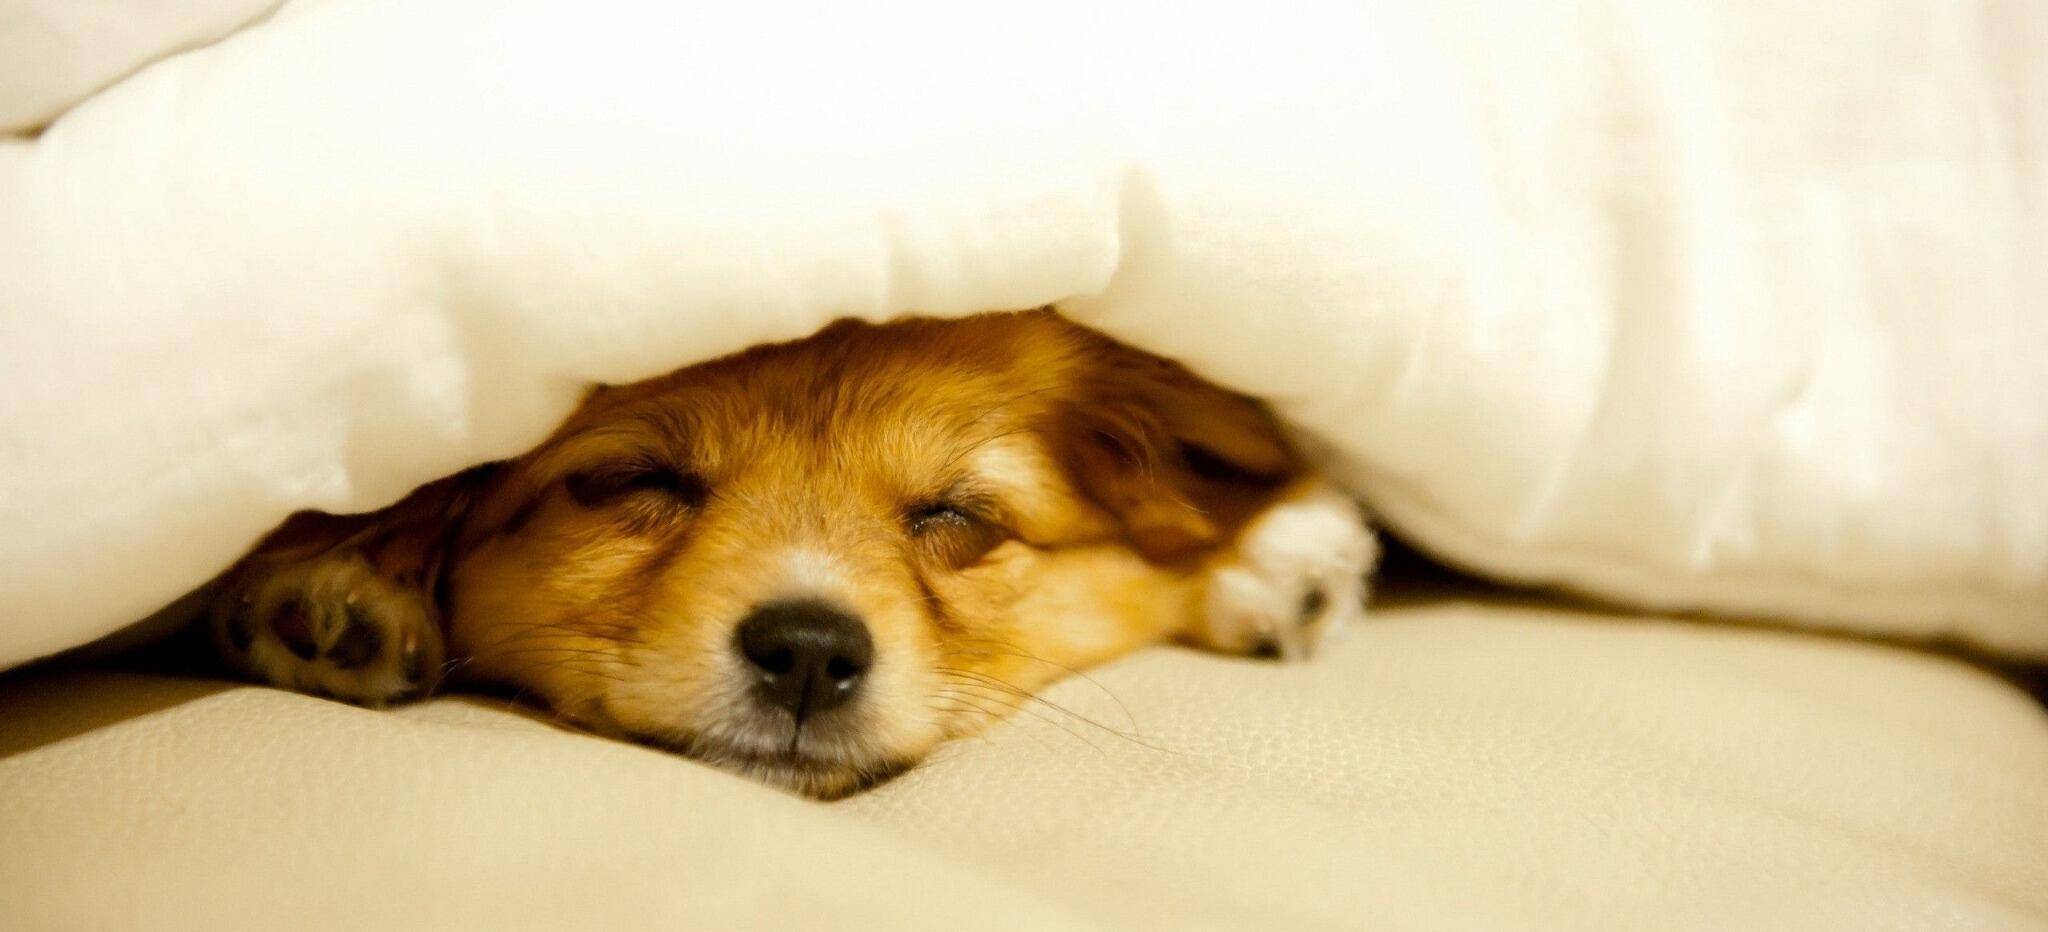 Как быстро уложить собаку спать: инструкция по приучению щенка ко сну ночью